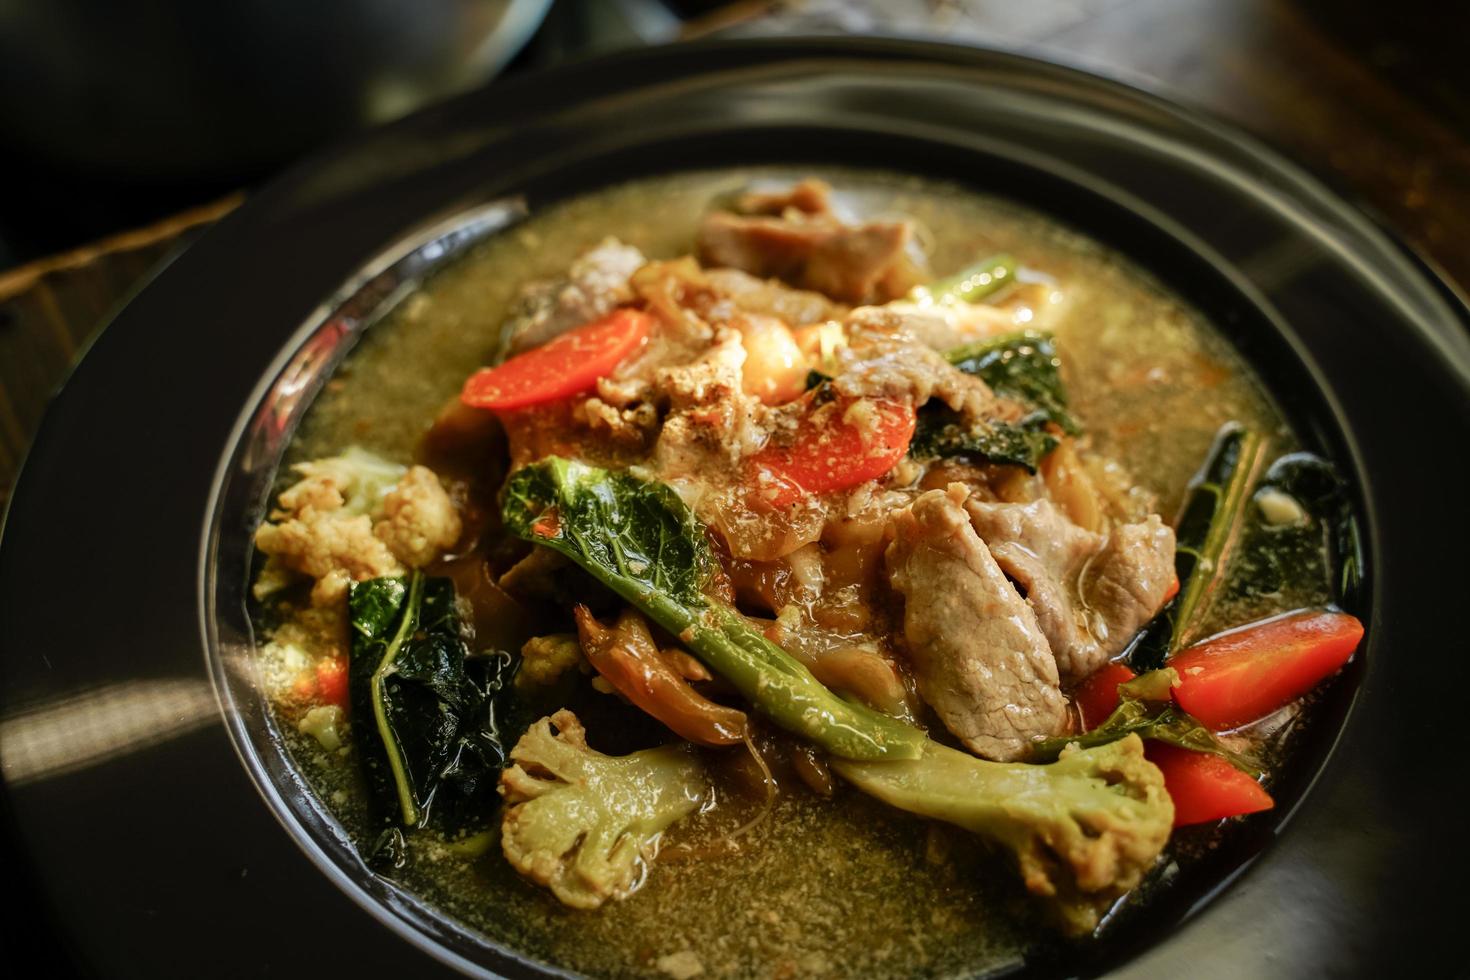 misture macarrão frito com carne de porco e couve em molho de comida chinesa e comida tailandesa é popular para comer em todo o país. foto